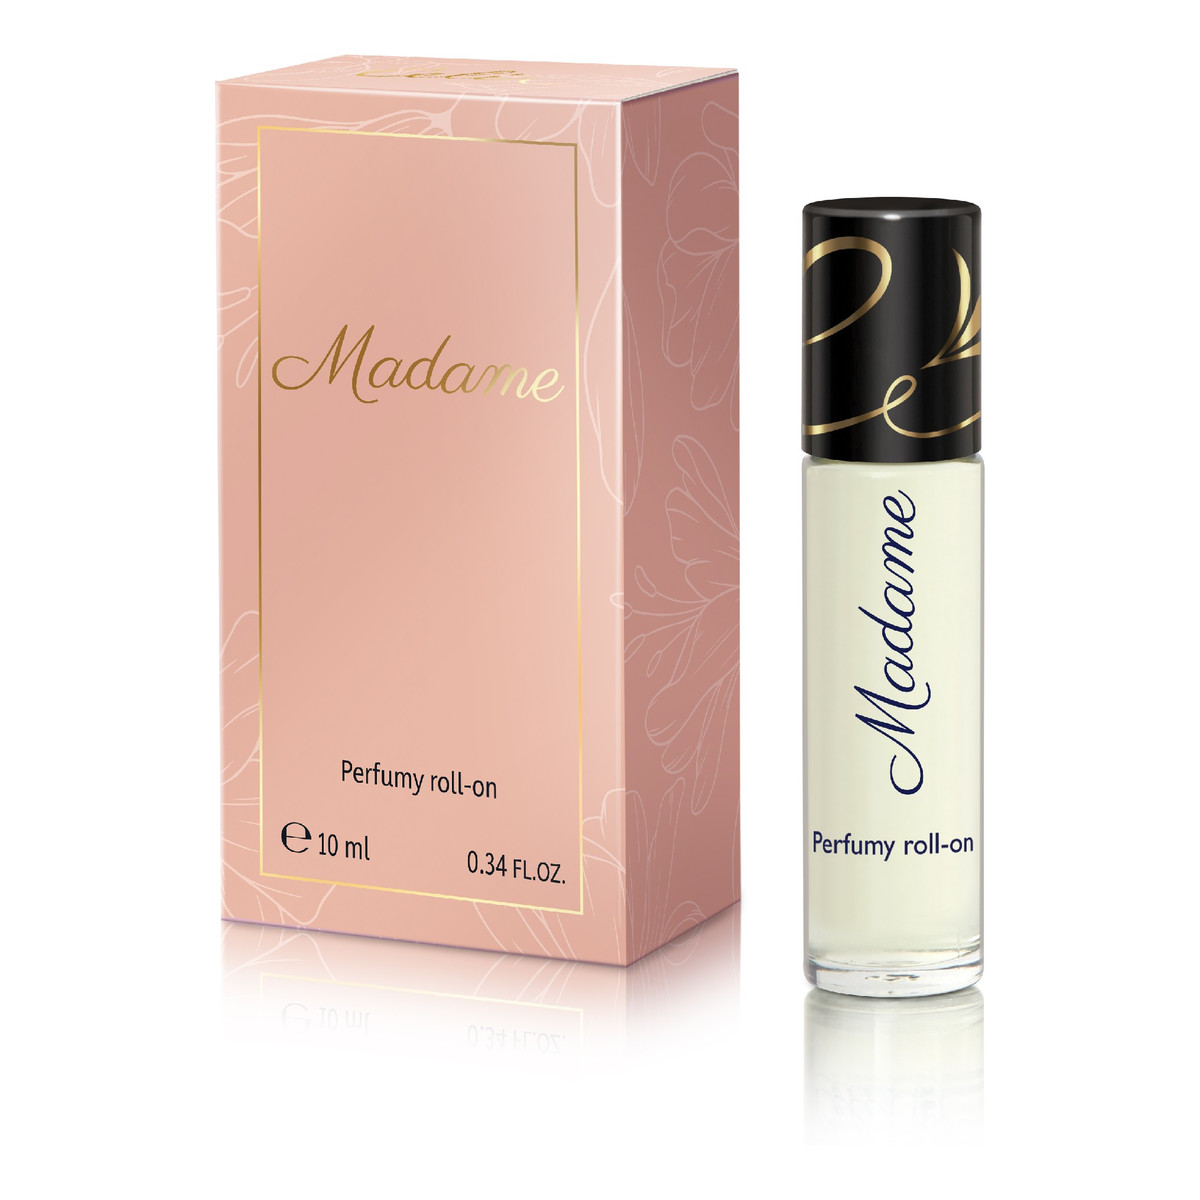 Celia MARVELLE MADAME perfumy roll-on 10ml